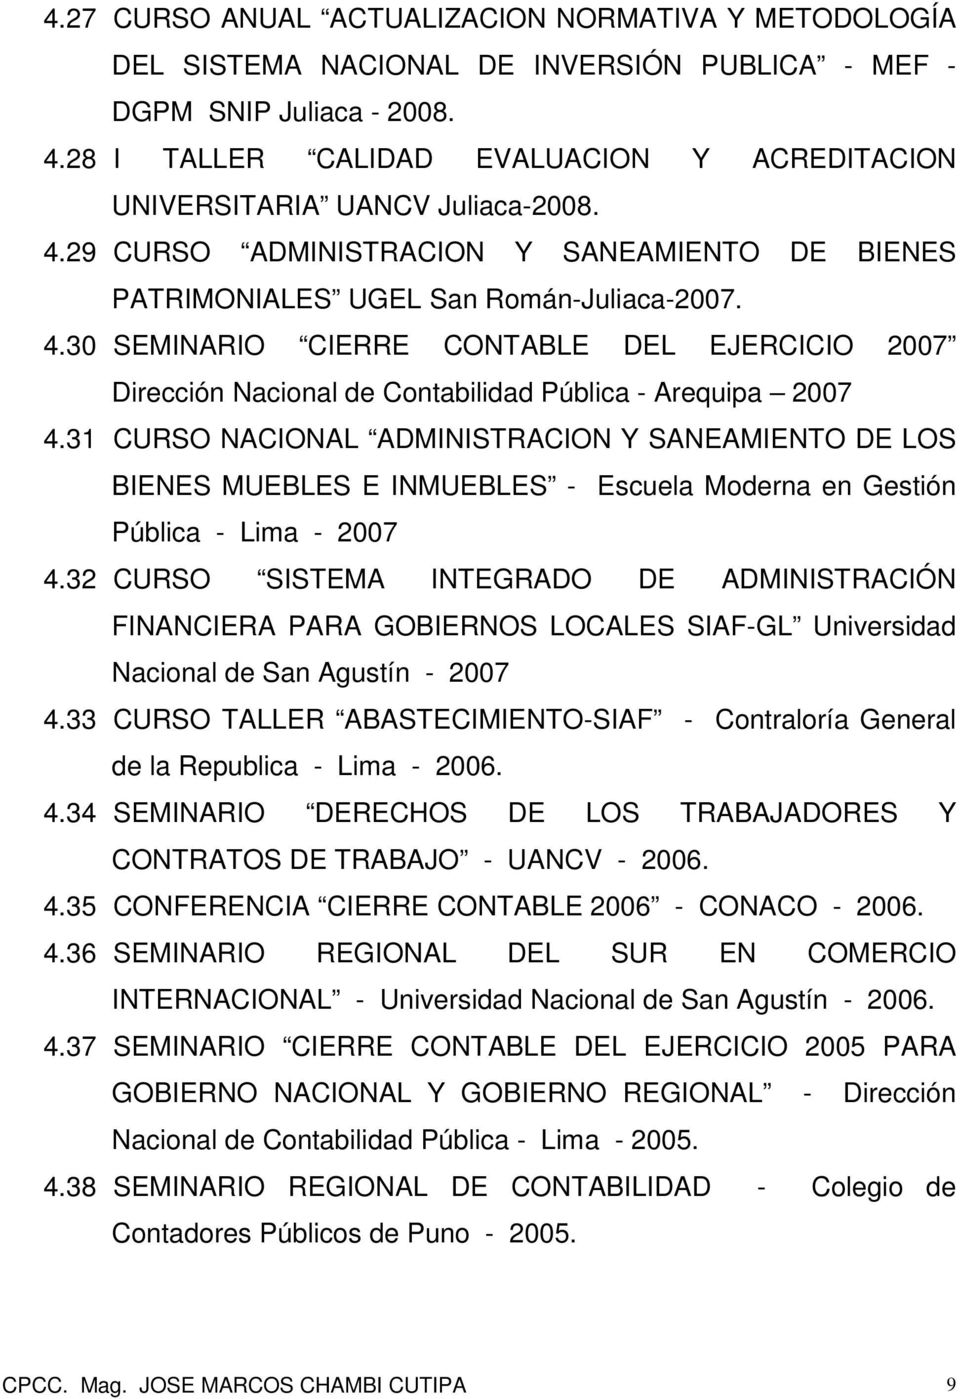 31 CURSO NACIONAL ADMINISTRACION Y SANEAMIENTO DE LOS BIENES MUEBLES E INMUEBLES - Escuela Moderna en Gestión Pública - Lima - 2007 4.